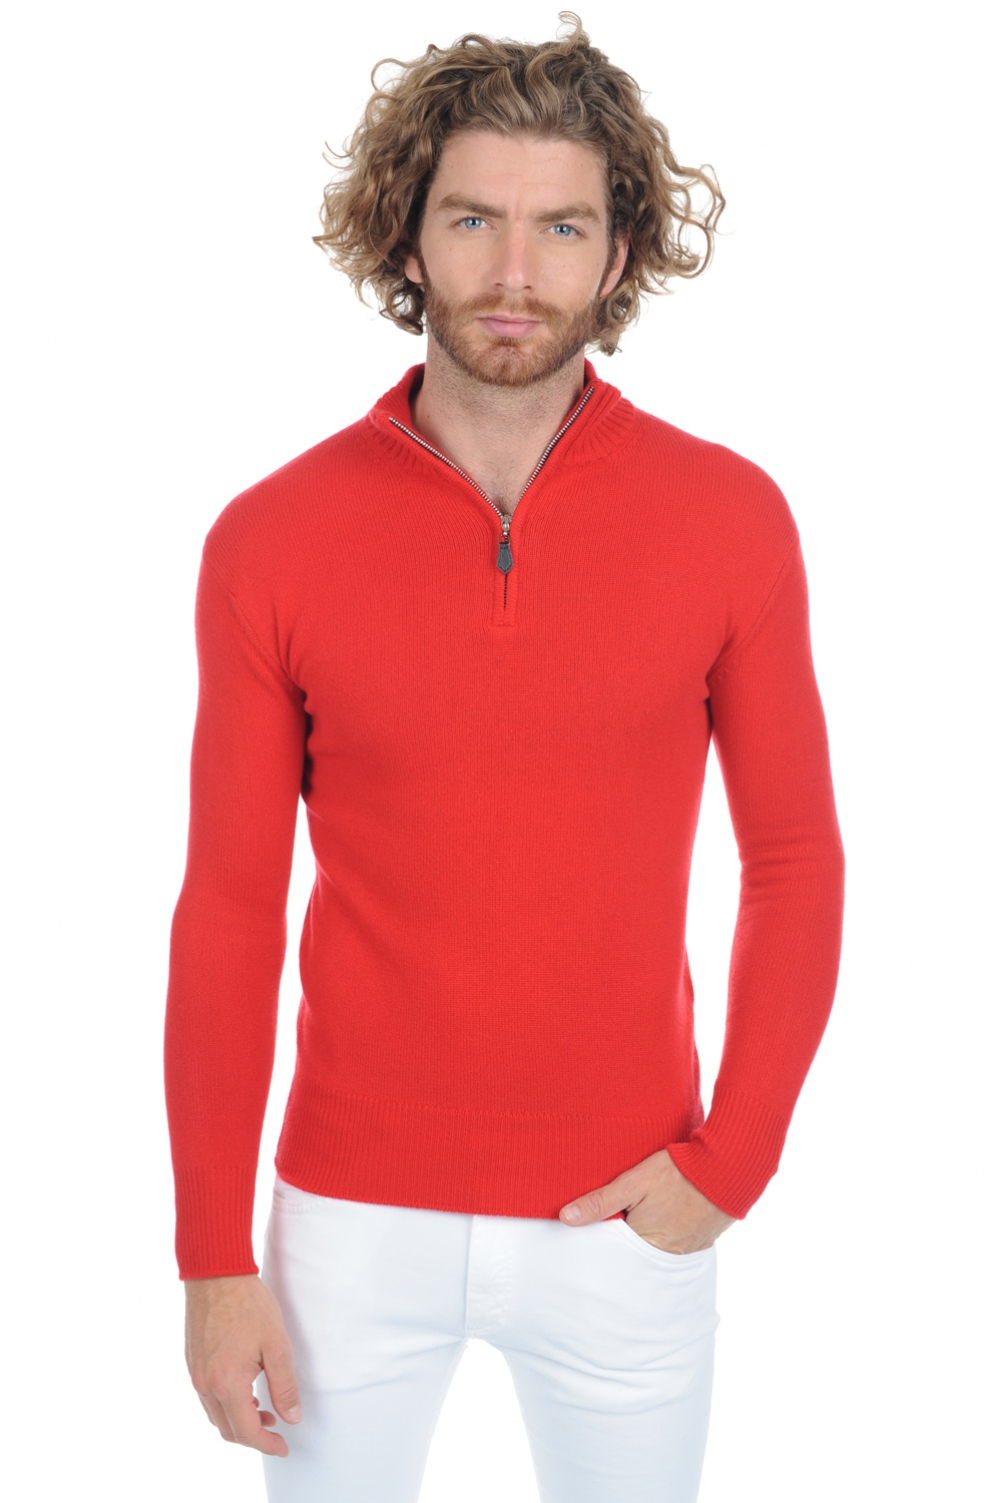 Cashmere men premium sweaters donovan premium tango red m